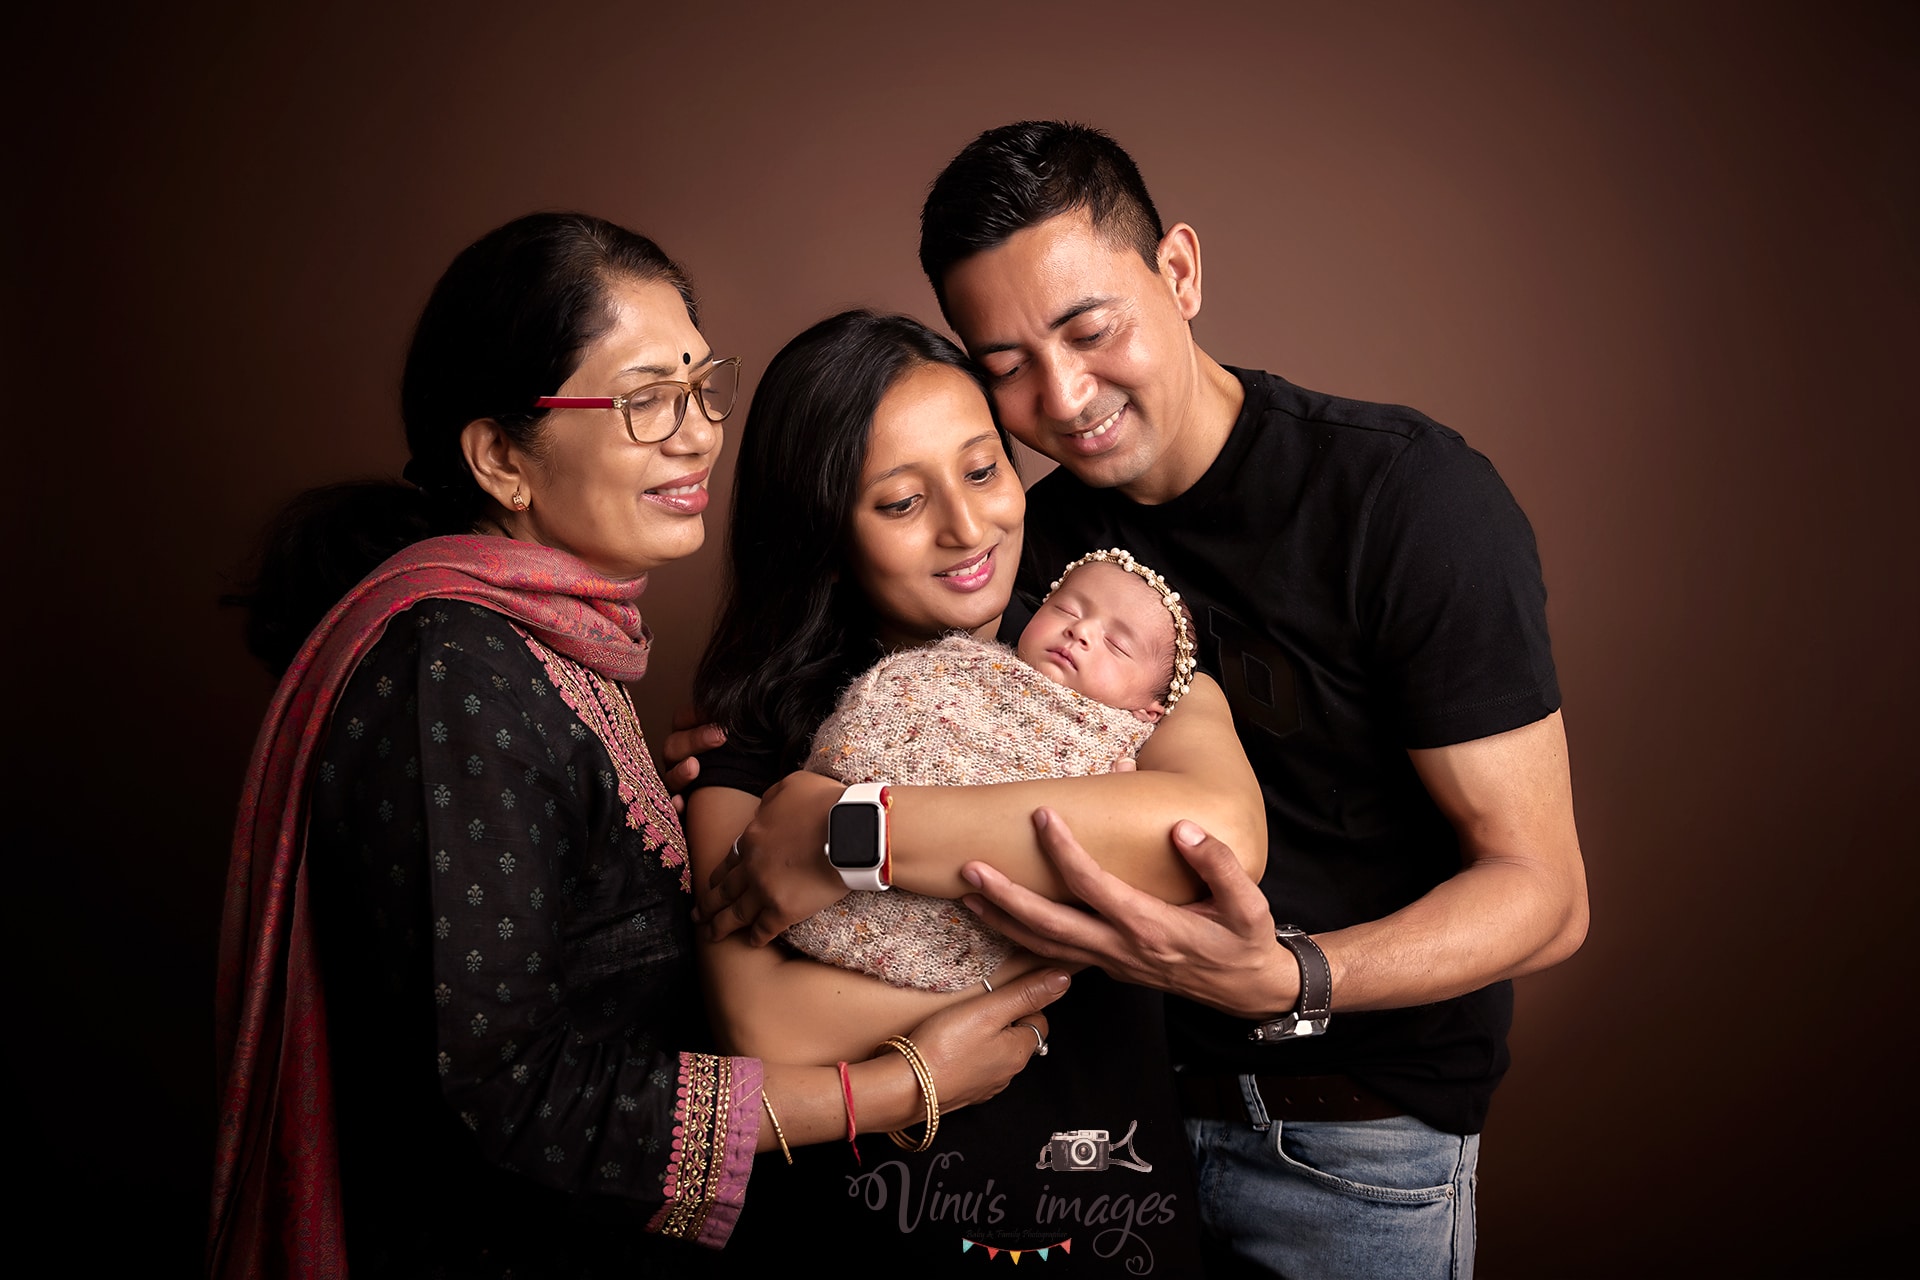 Family Portrait Photography | Family portrait poses, Family photo studio, Family  photo pose